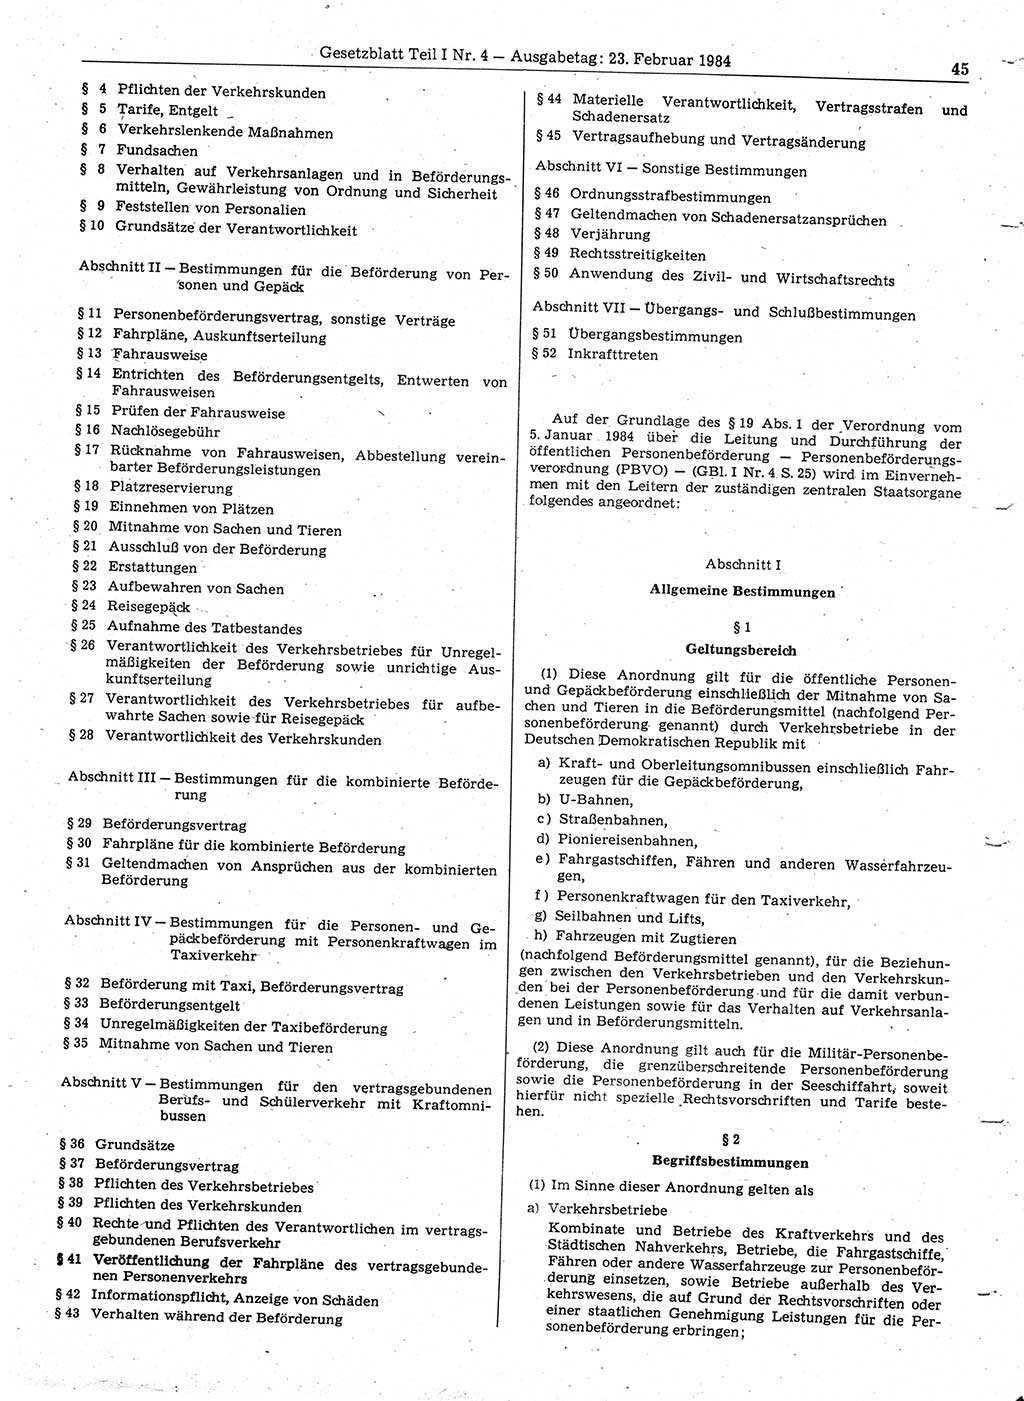 Gesetzblatt (GBl.) der Deutschen Demokratischen Republik (DDR) Teil Ⅰ 1984, Seite 45 (GBl. DDR Ⅰ 1984, S. 45)